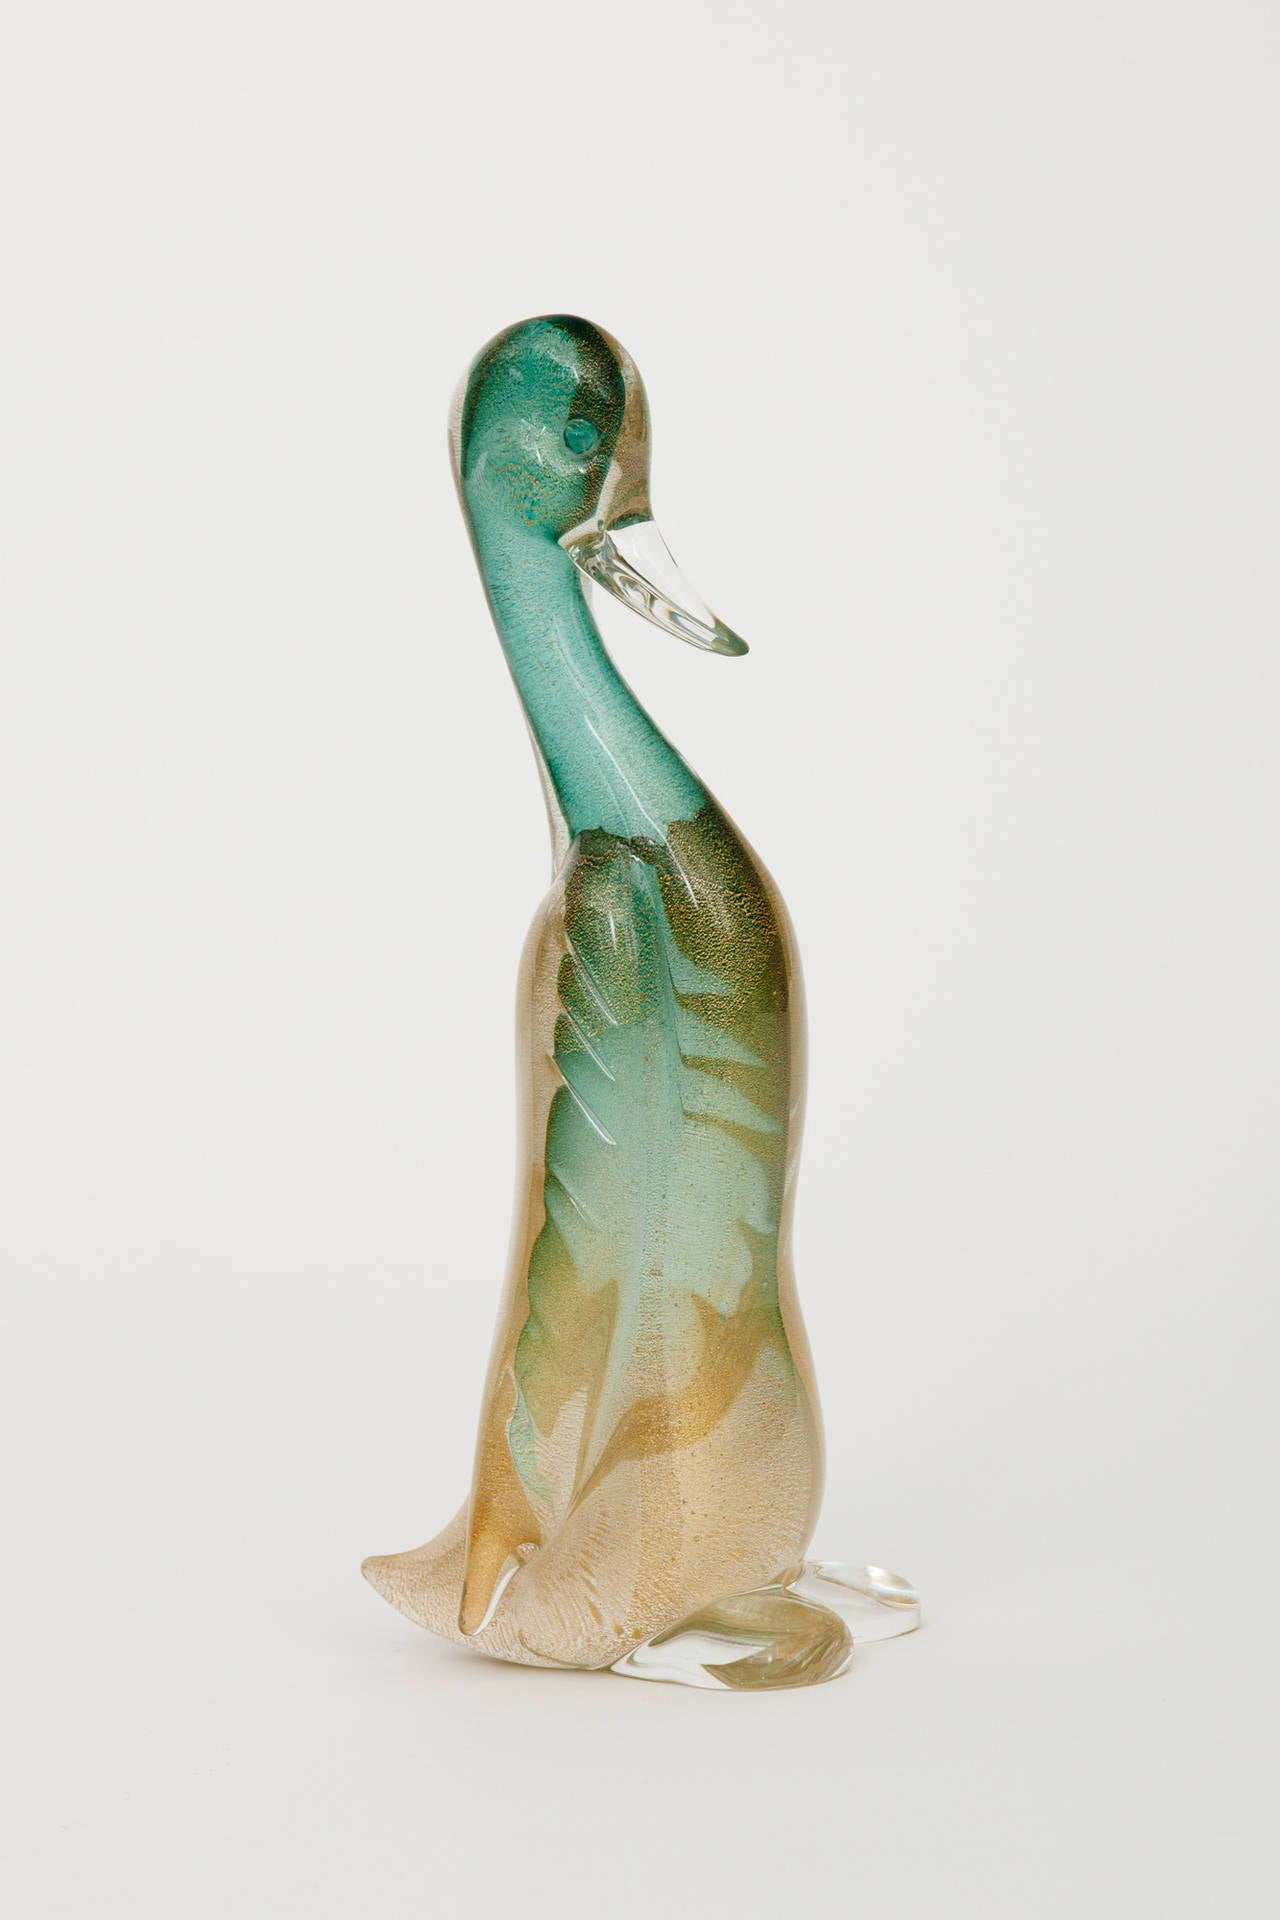 murano glass ducks